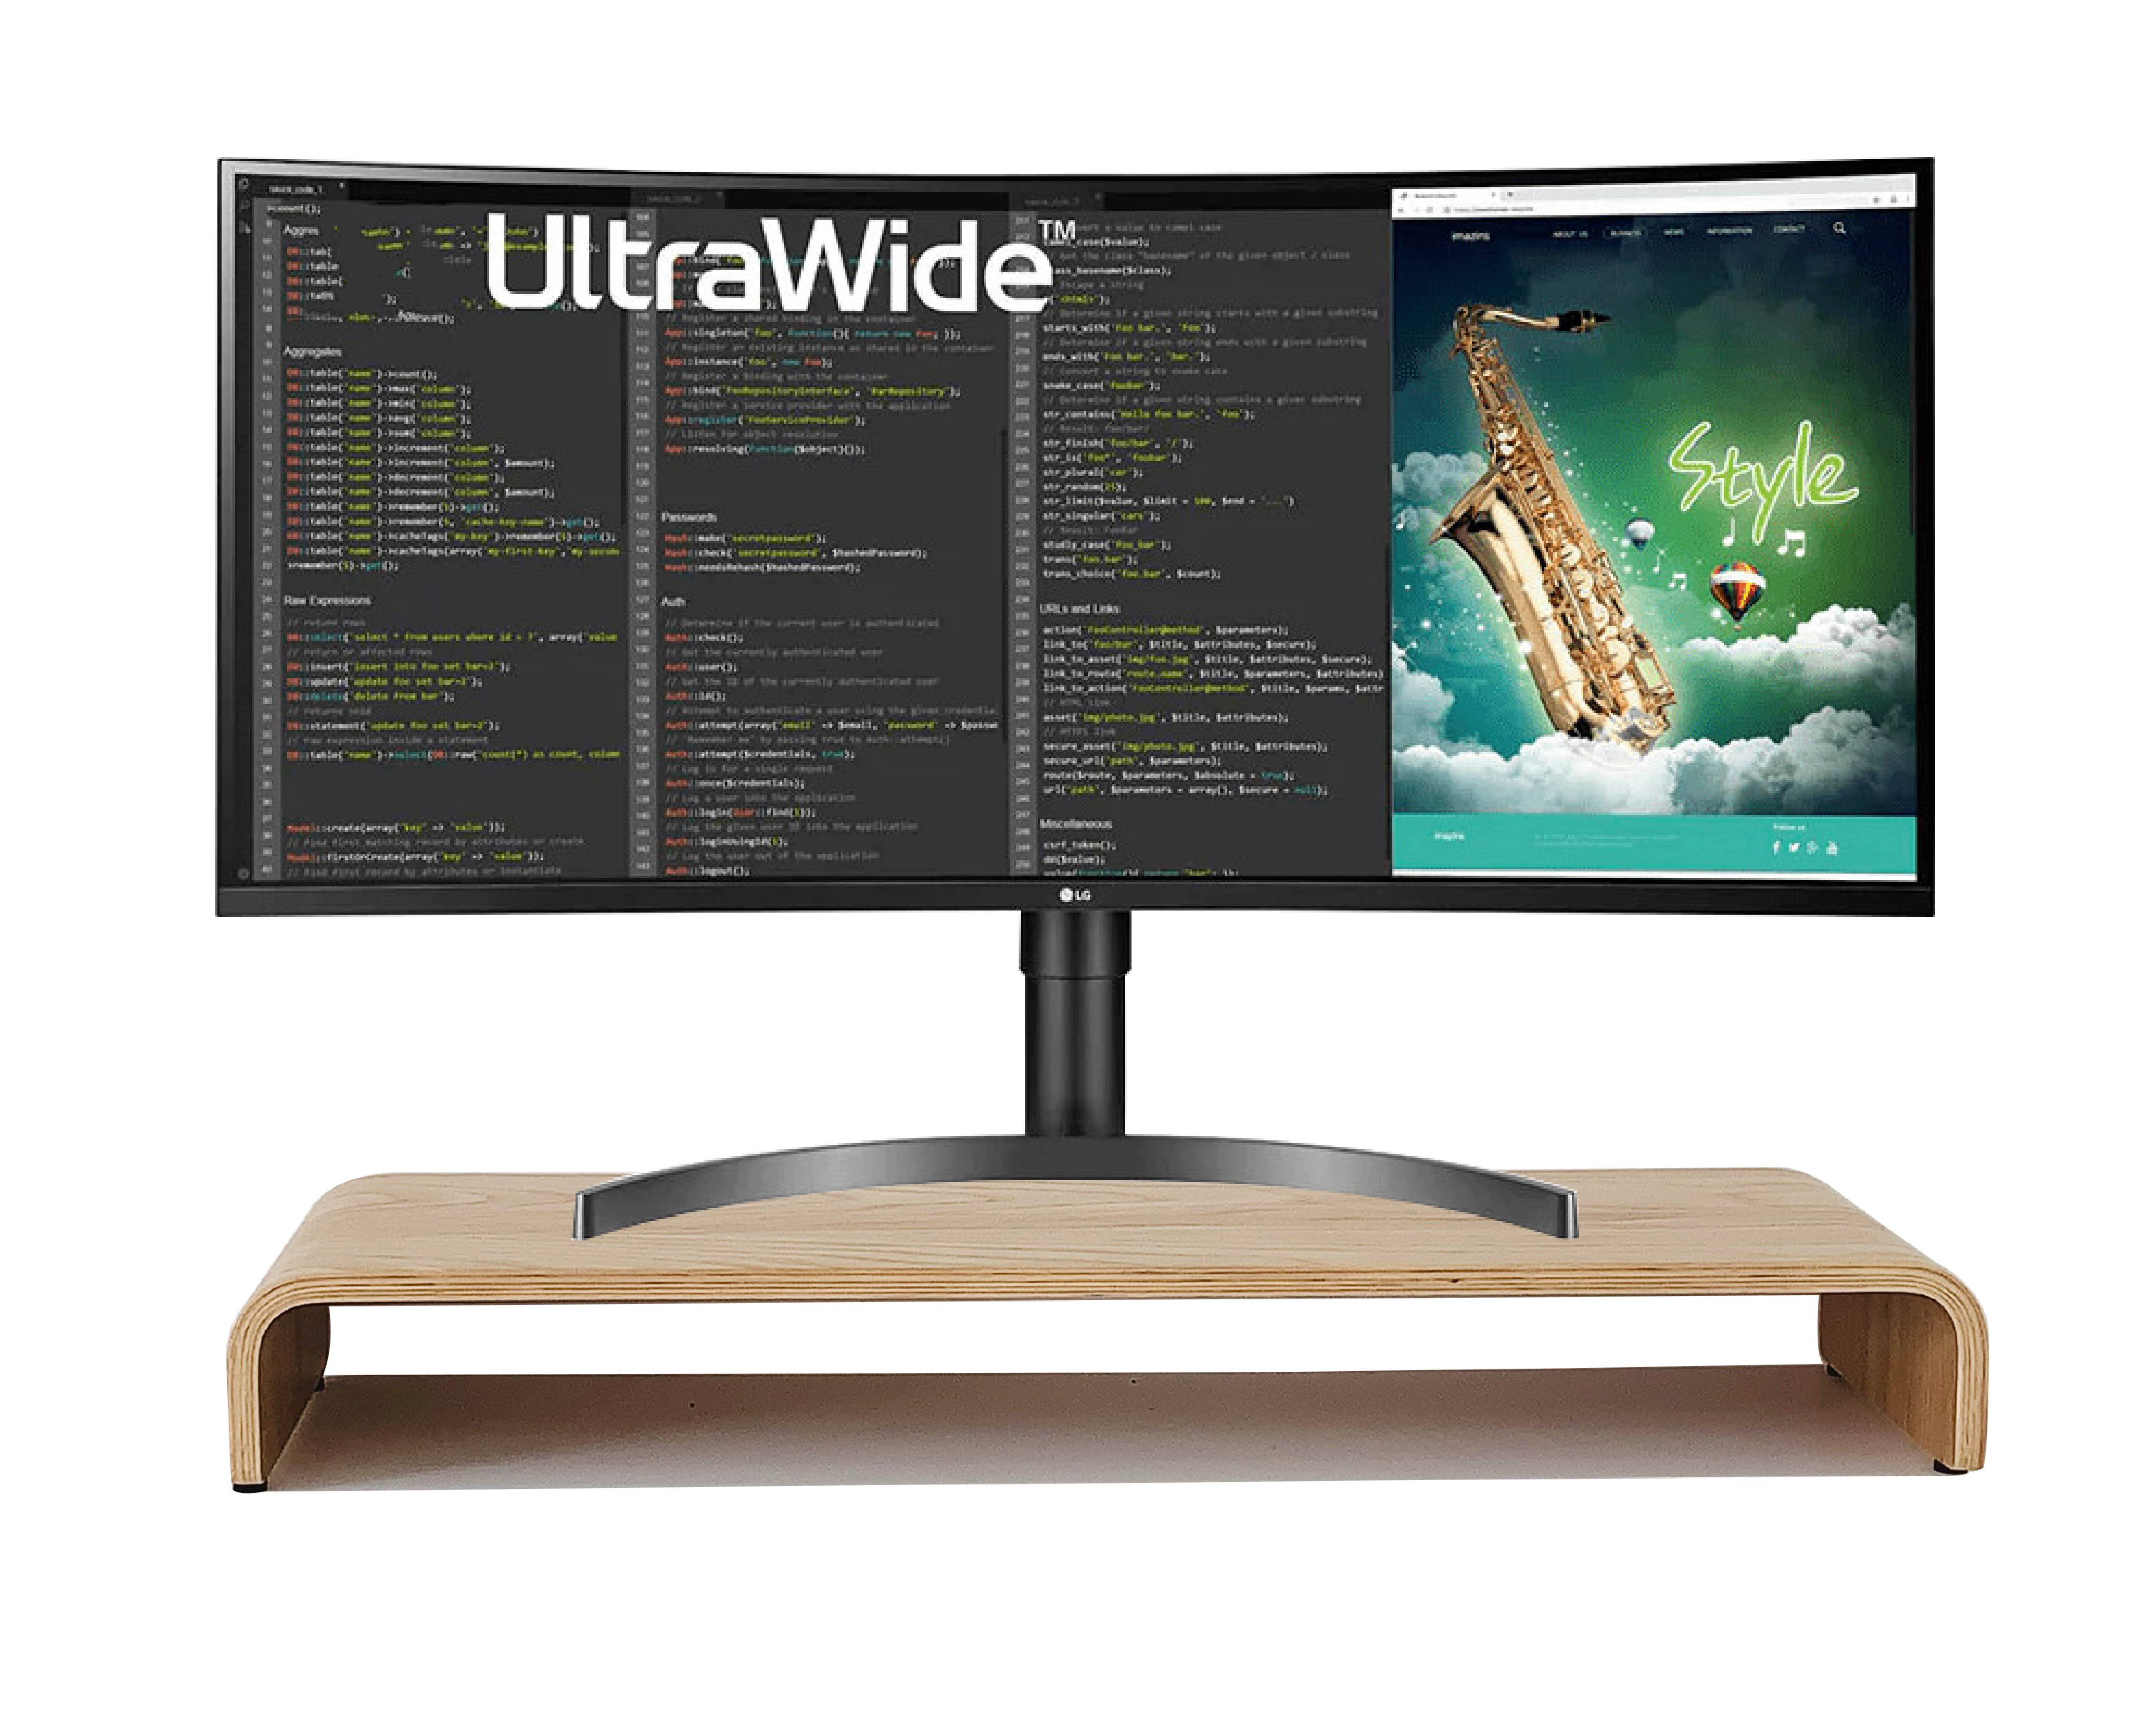 Kệ màn hình máy tính - Kệ Tivi Plyconcept Monitor Stand U800 - Ngang 80 cm - Màu gỗ Sồi